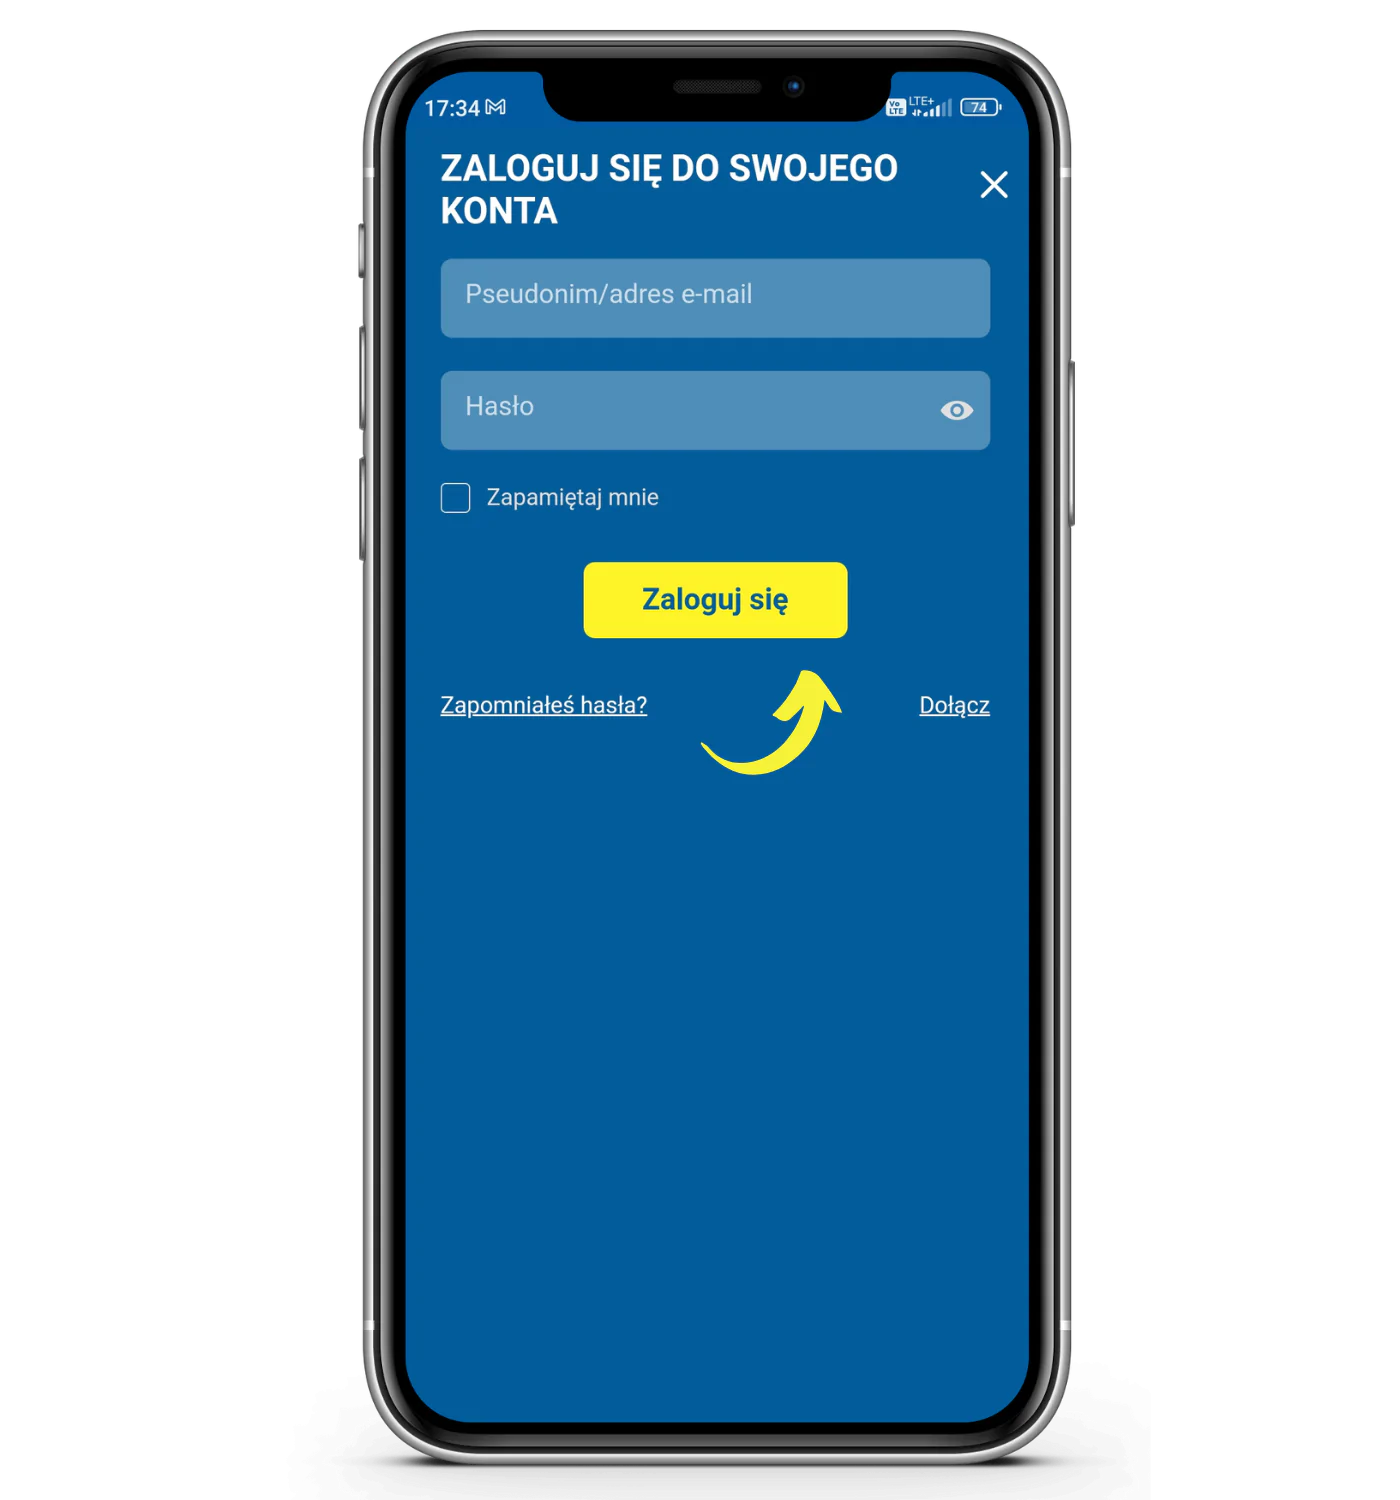 Jak dokonać wypłaty za pomocą aplikacji mobilnej Betcris krok 1 - włącz aplikację mobilną bukmachera, a następnie zaloguj się na swoje konto